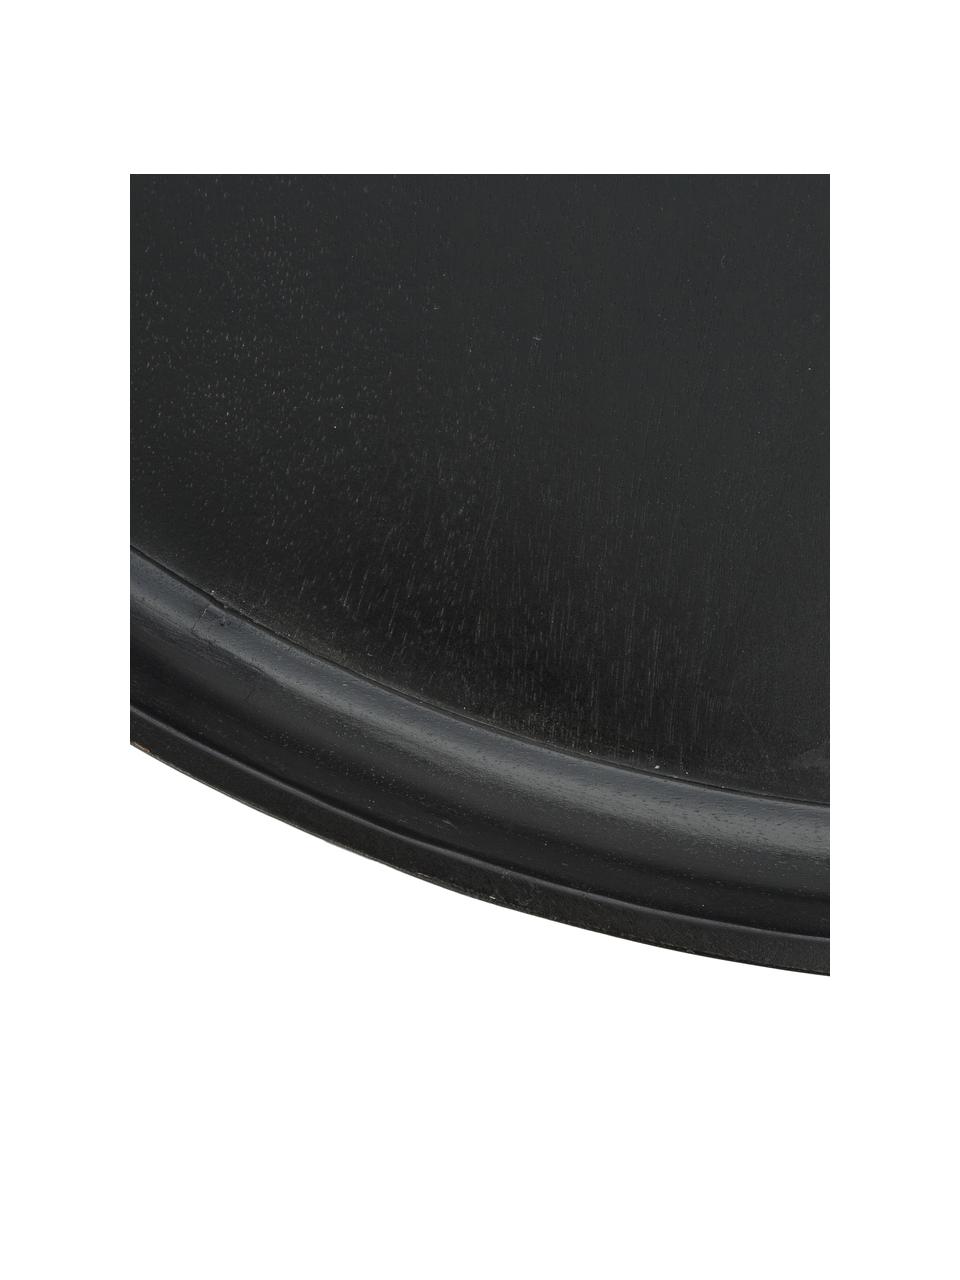 Runder Design-Couchtisch Bowl aus Mangoholz, Tischplatte: Mangoholz, lackiert, Beine: Stahl, pulverbeschichtet, Mangoholz schwarz, lackiert, Ø 75 x H 38 cm